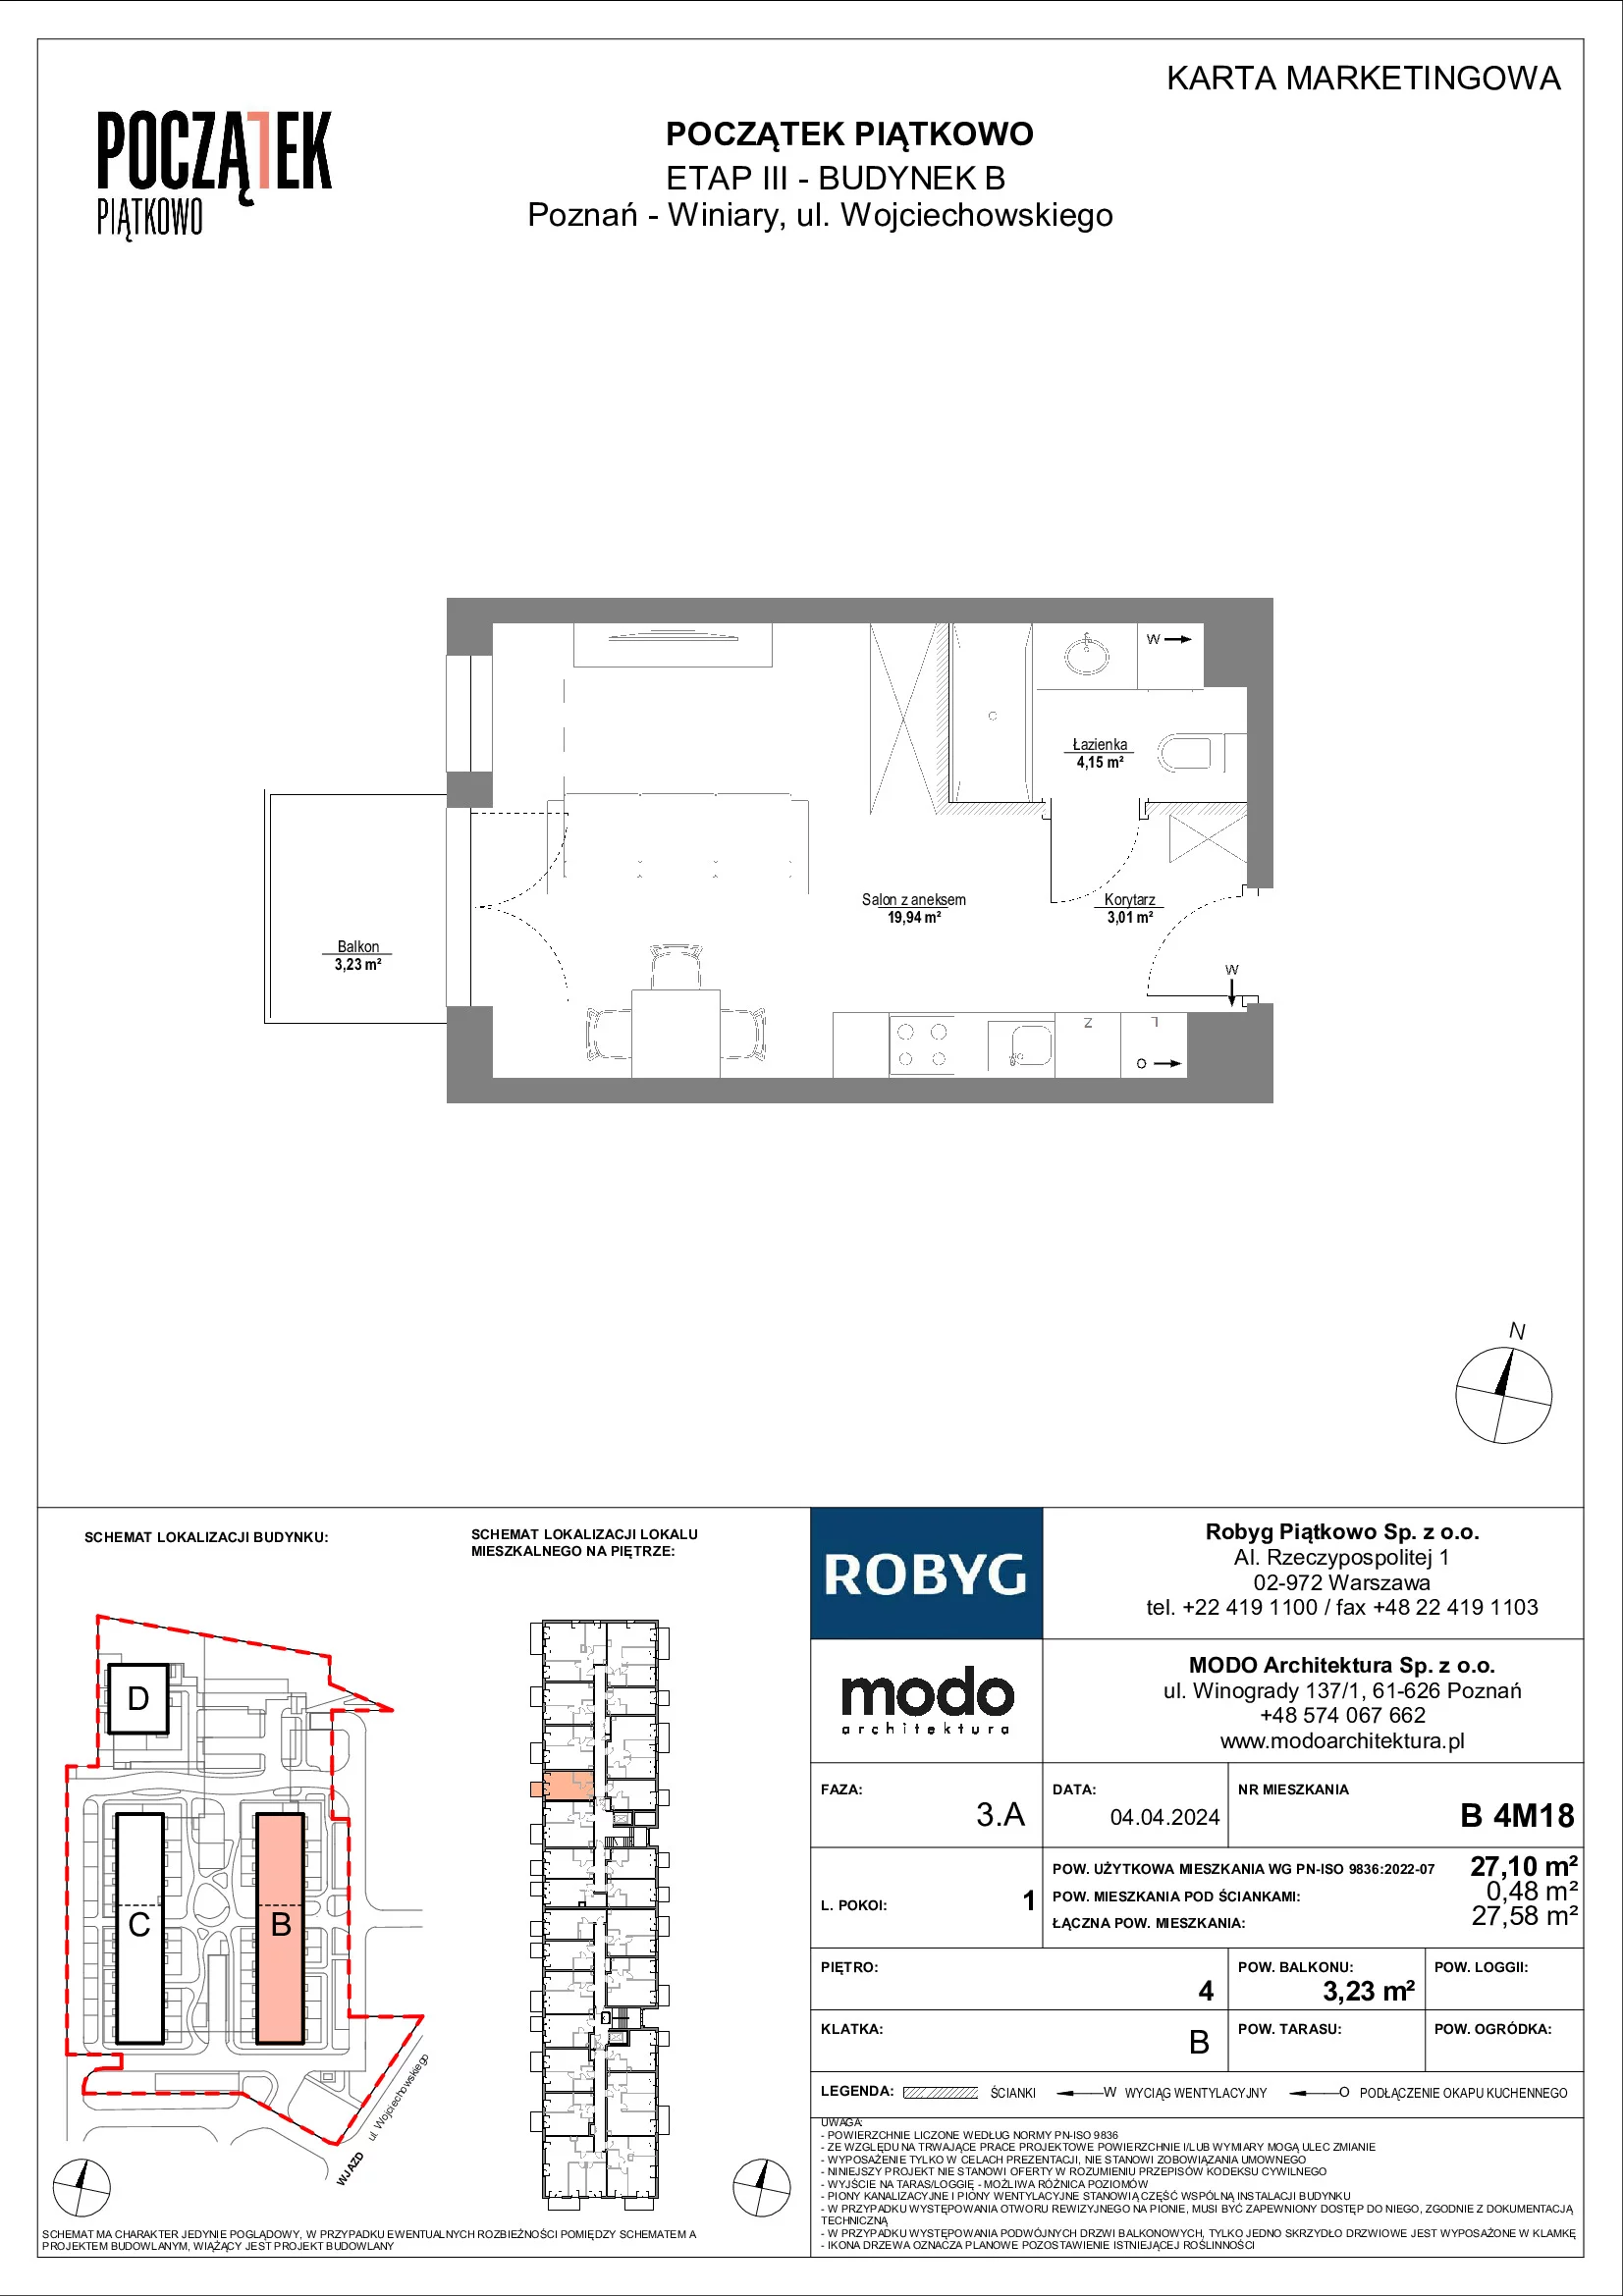 Mieszkanie 27,10 m², piętro 4, oferta nr B.4M18, Początek Piątkowo, Poznań, Piątkowo, ul. Wojciechowskiego